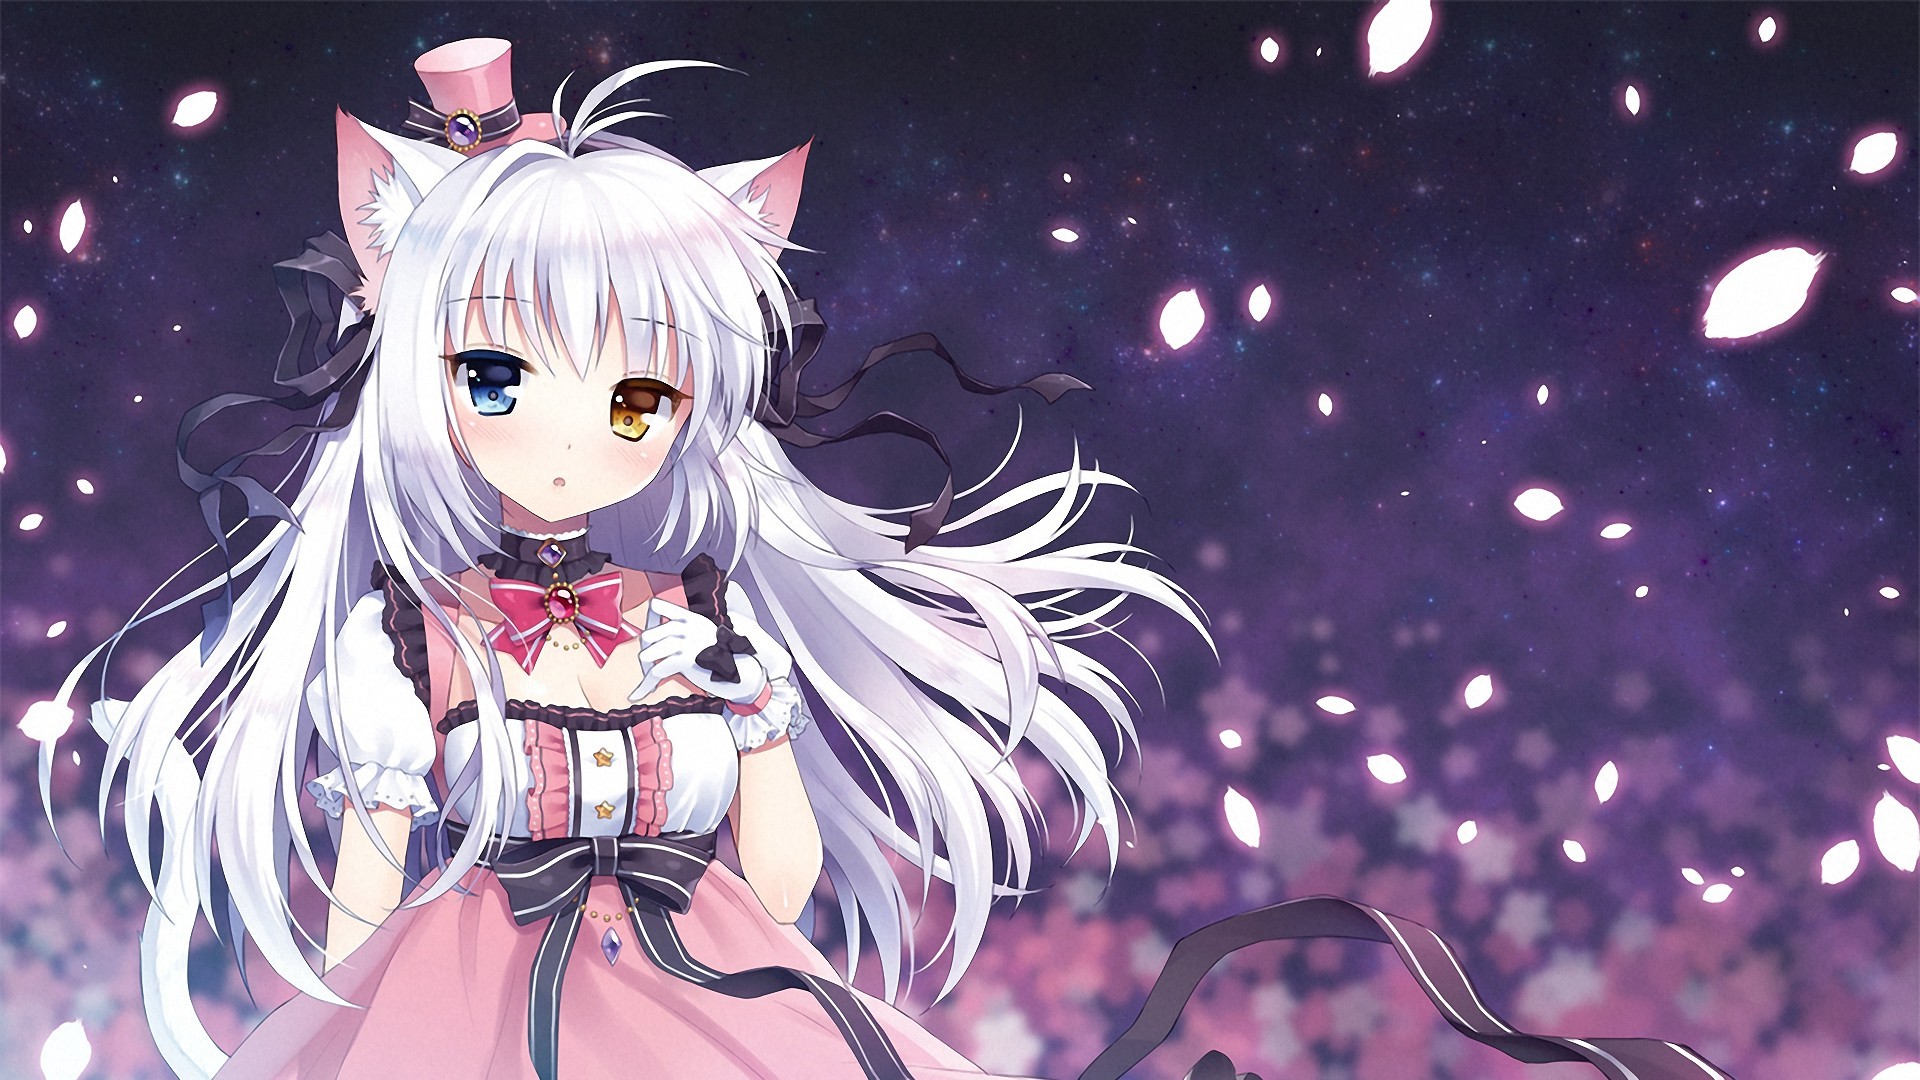 Manga Girl Wallpaper - Anime Cat Girl Background , HD Wallpaper & Backgrounds